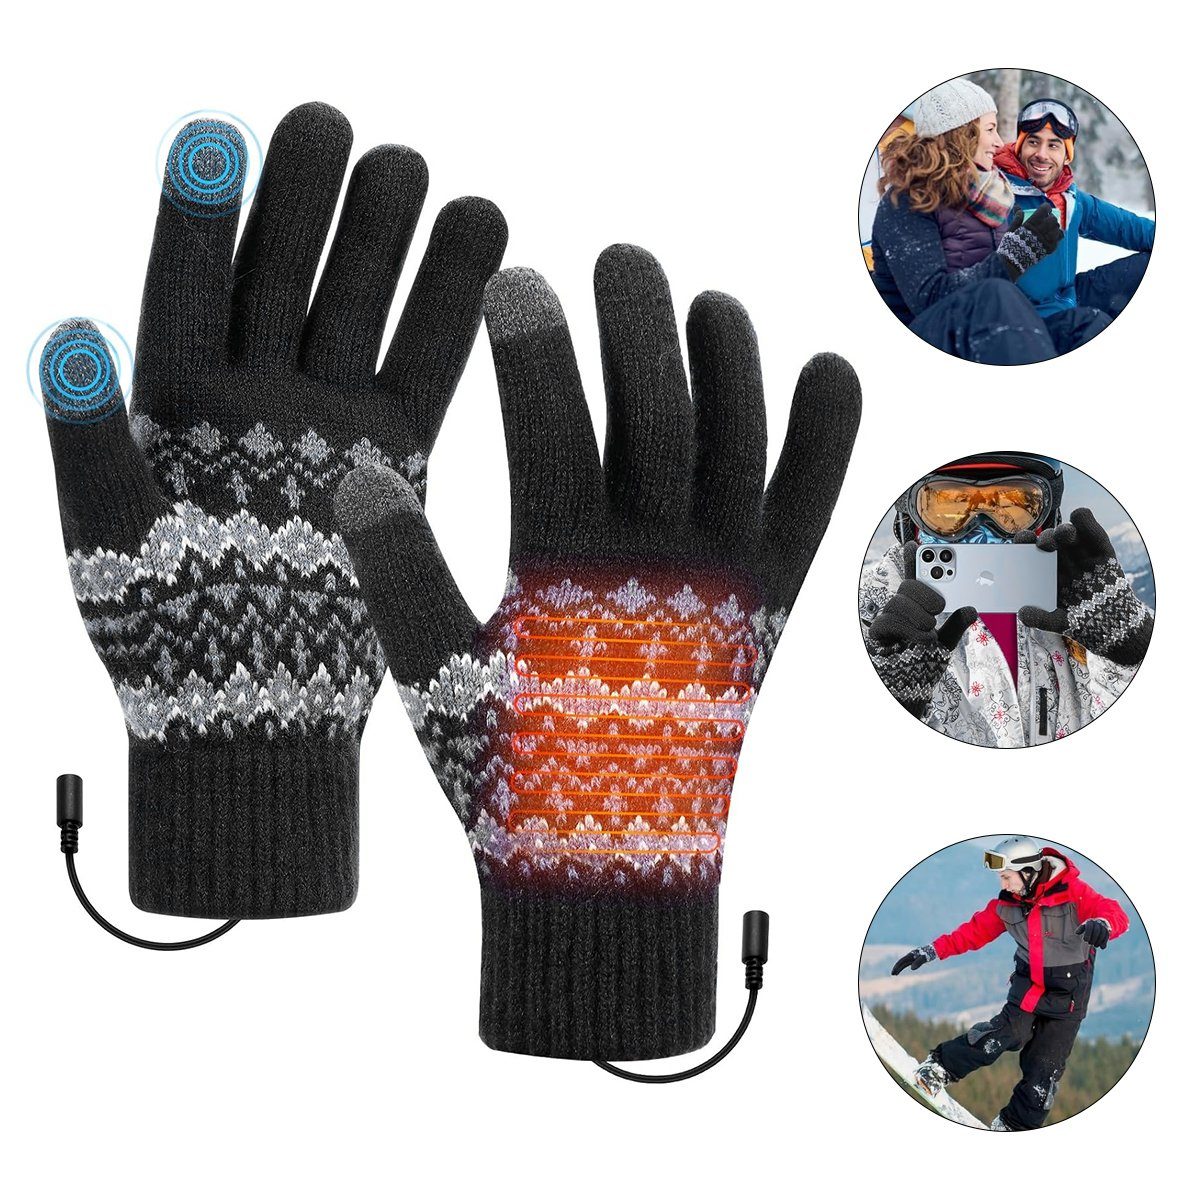 Hikeren Winter-Arbeitshandschuhe Beheizbare Handschuhe mit Schalter,3-stufige Temperatureinstellung schwarz